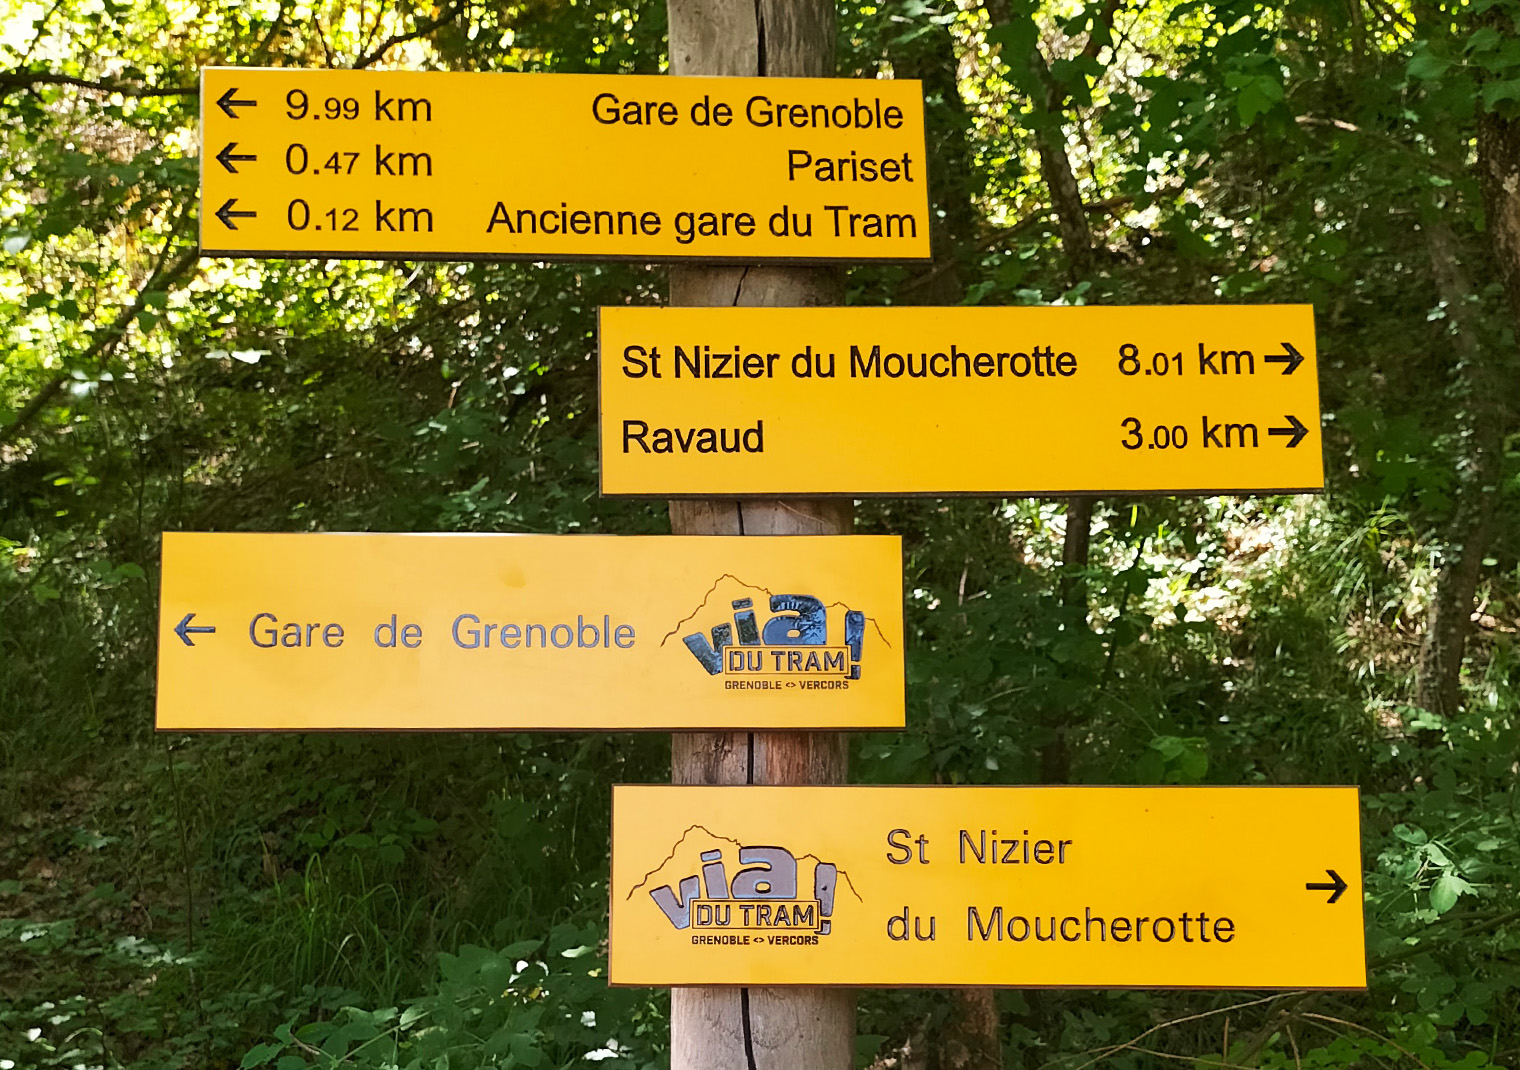 Identité visuelle de la Via du Tram créée pour Grenoble-Alpes Métropole par Caramel & Paprika - Lames directionnelles - Vignette projet